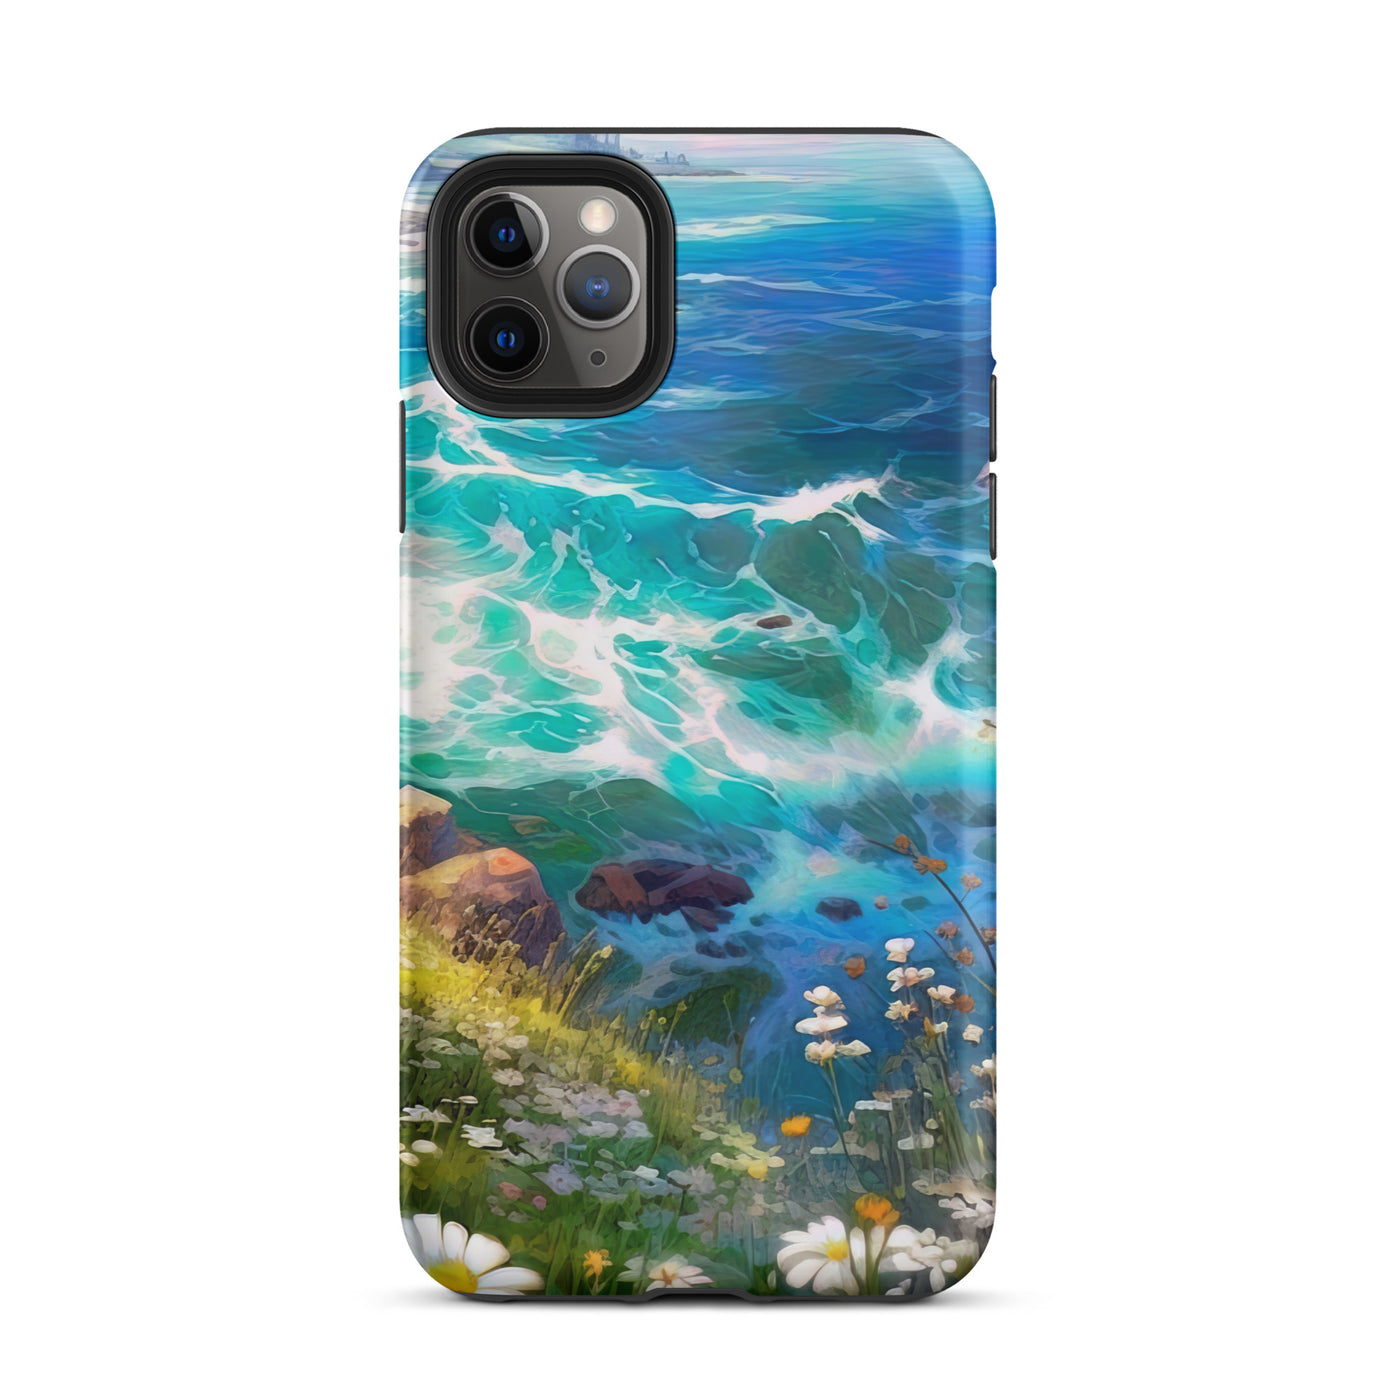 Berge, Blumen, Fluss und Steine - Malerei - iPhone Schutzhülle (robust) camping xxx iPhone 11 Pro Max